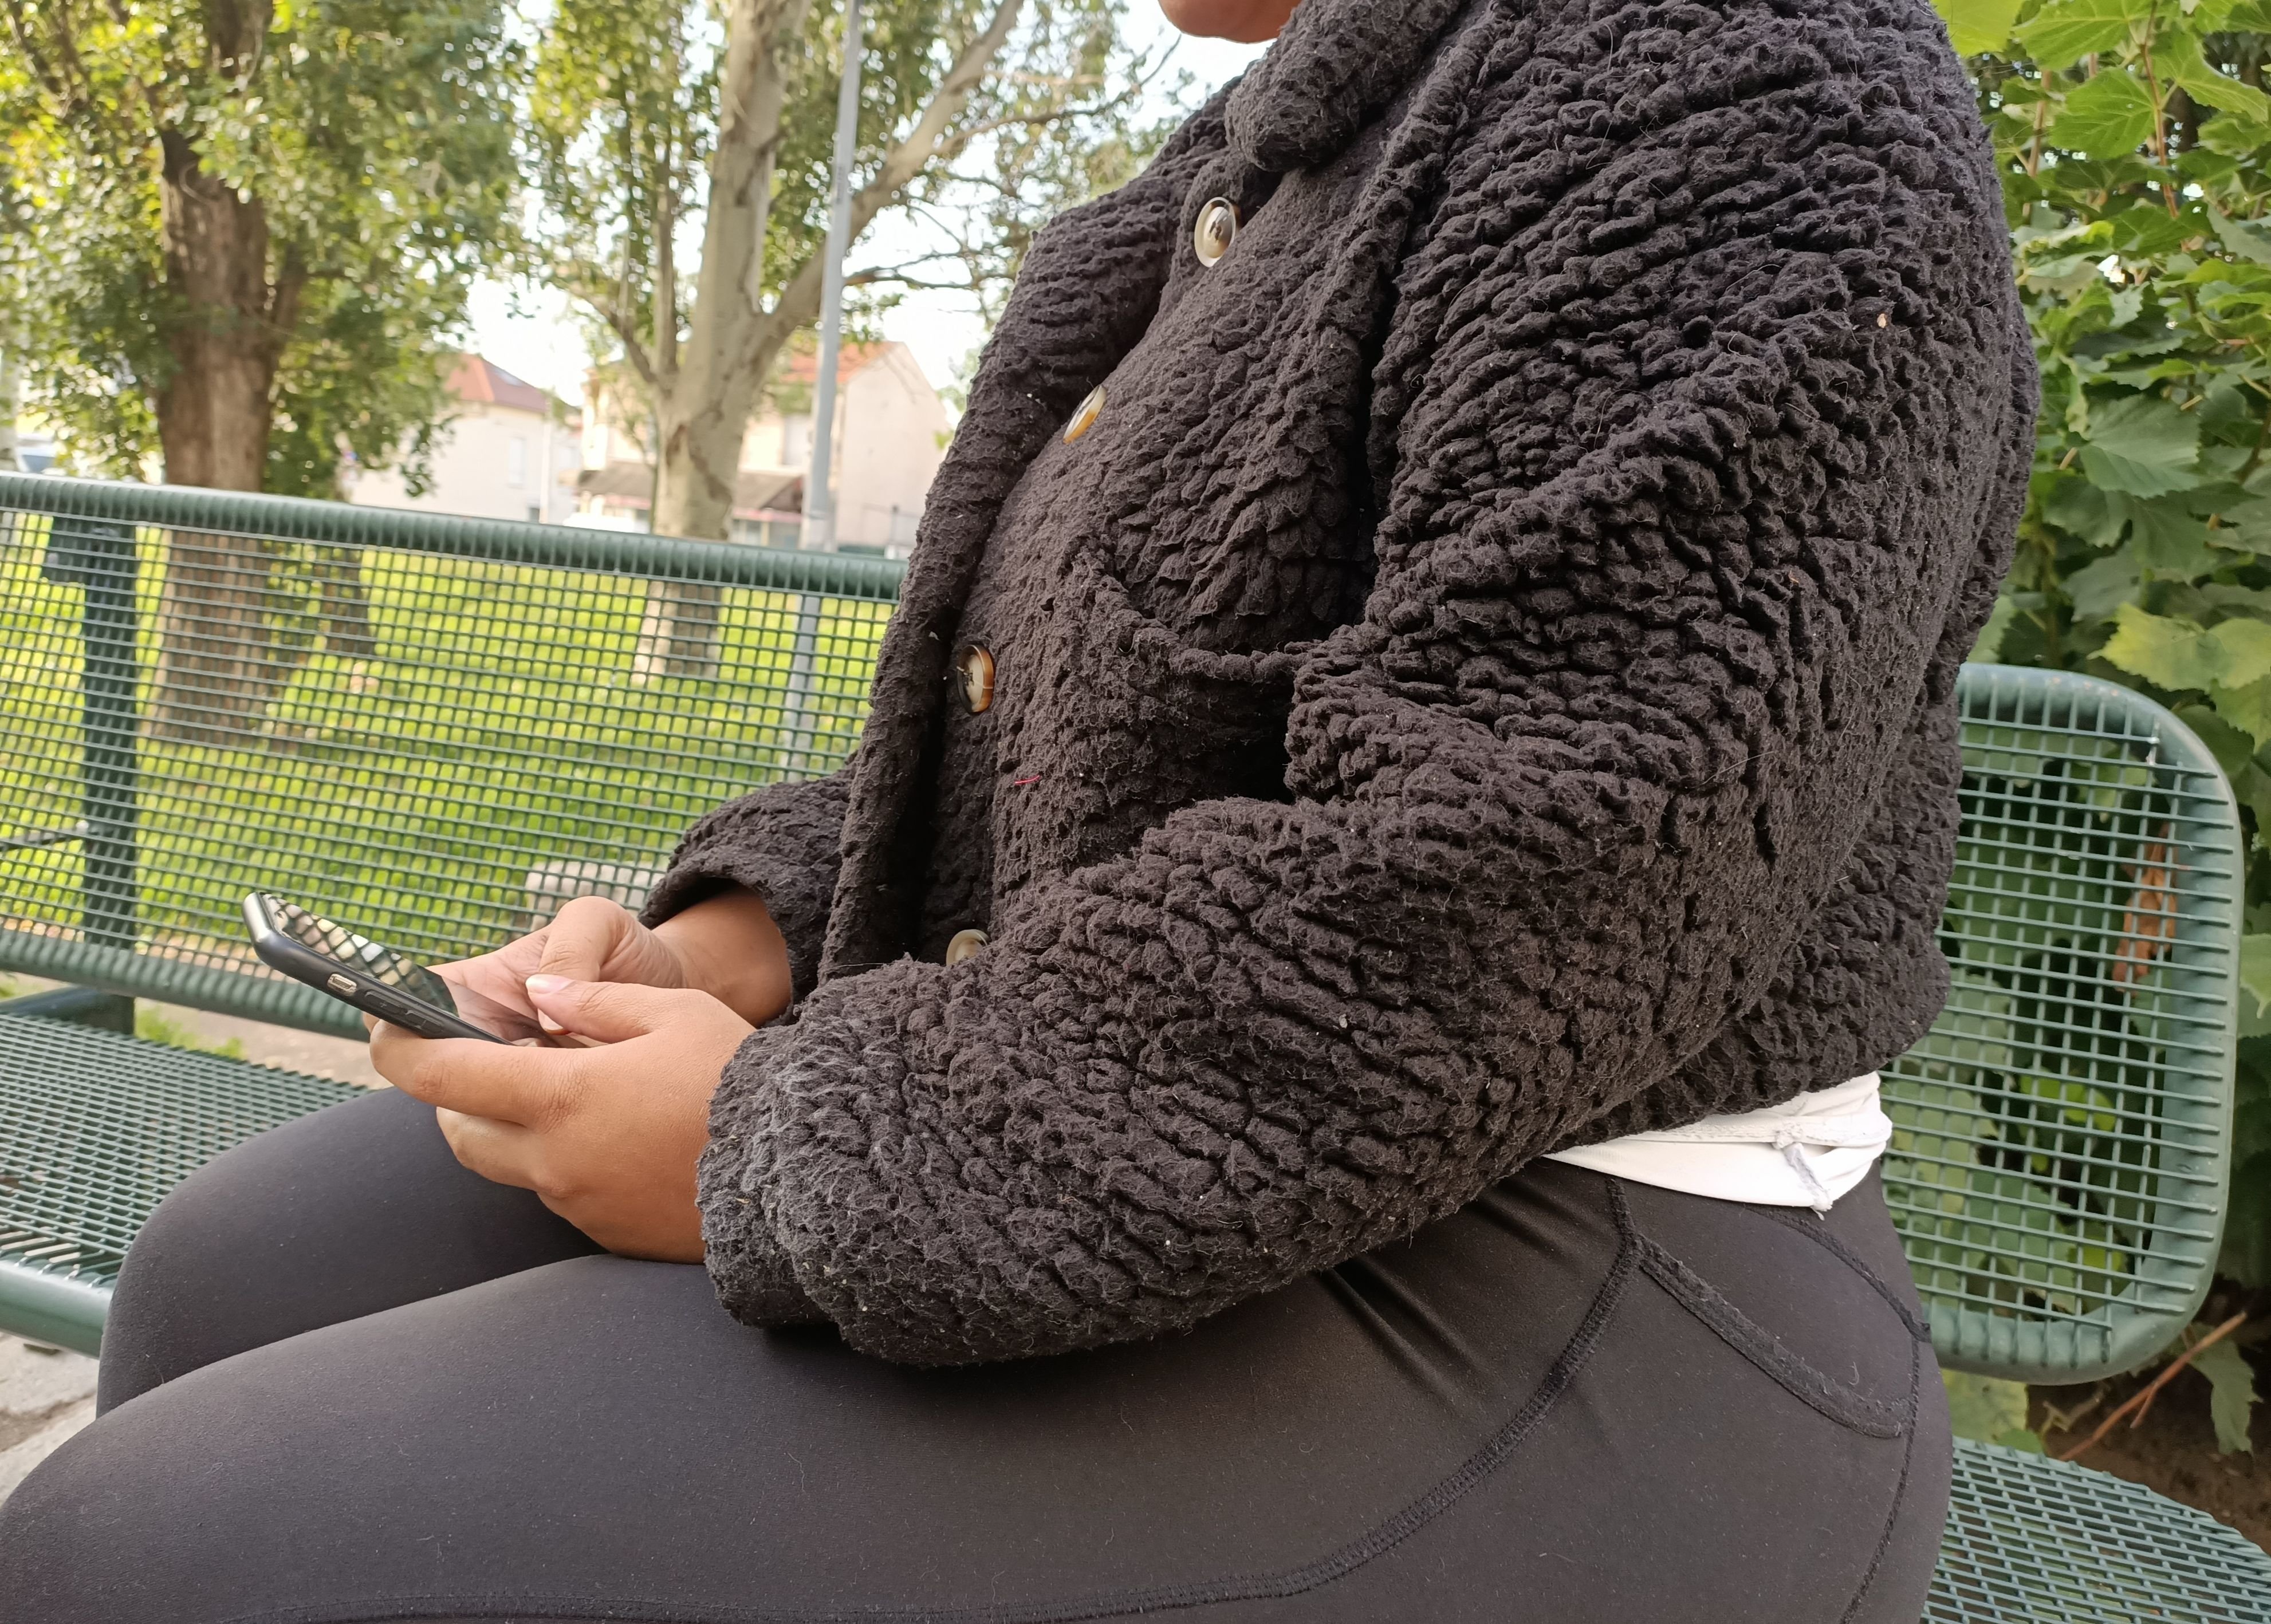 Shanah, 24 ans, habitante de Seine-Saint-Denis, est harcelée en ligne par le créateur d'un compte créé sur l'application Telegram dans lequel des hommes s'échangent des photos intimes de femmes sans leur consentement. LP/Maïram Guissé